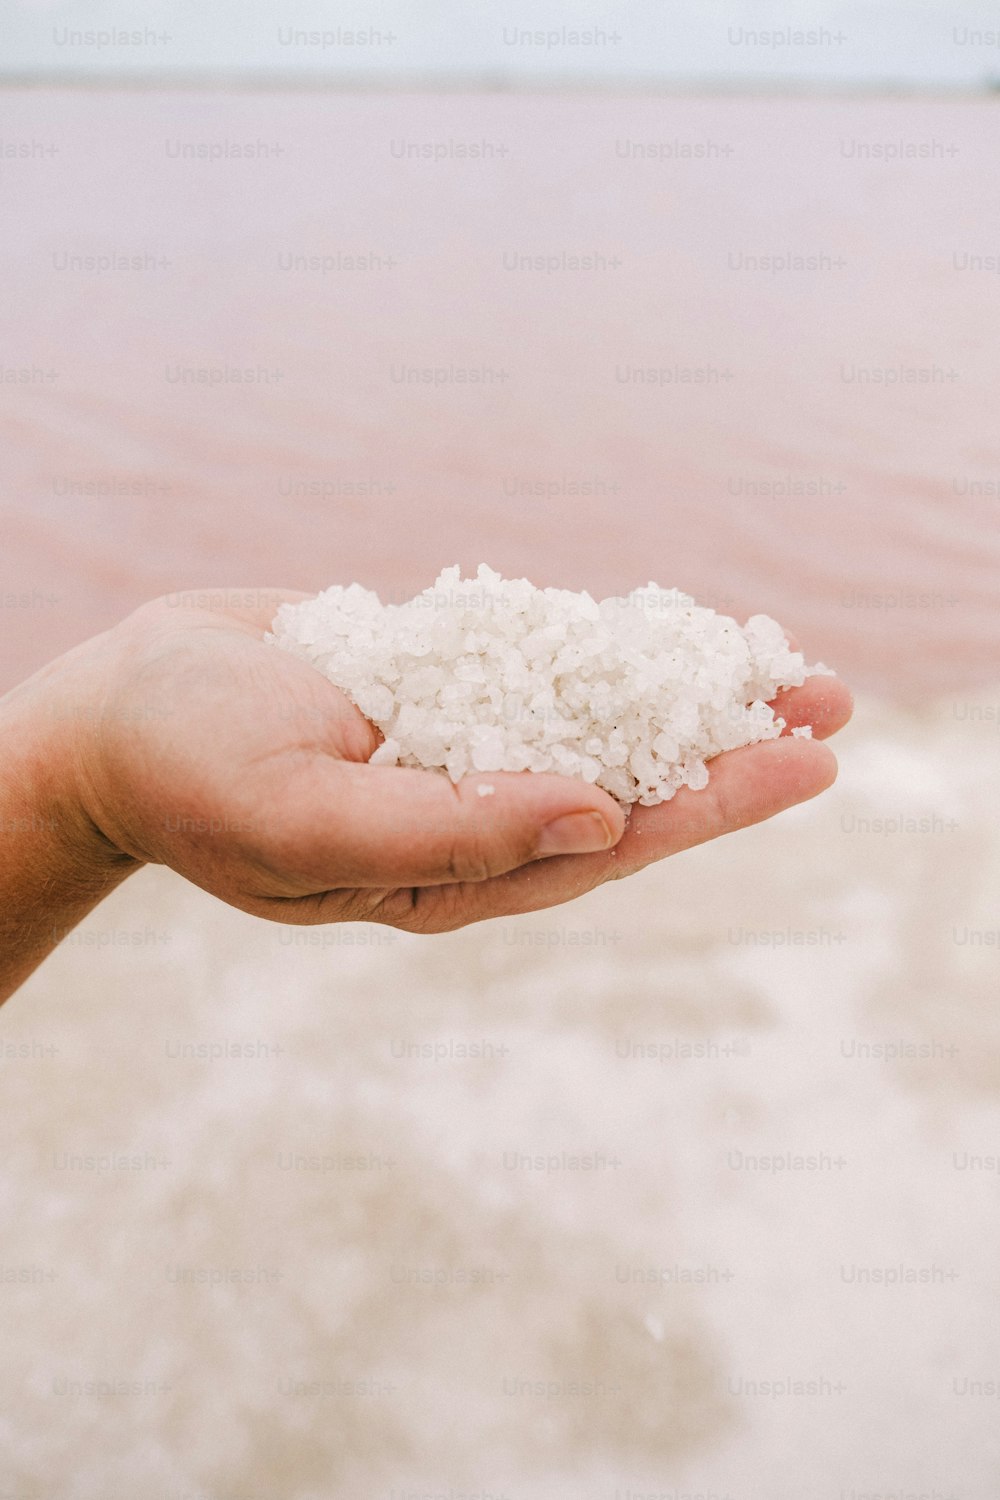 une personne tenant une poignée de sel dans sa main